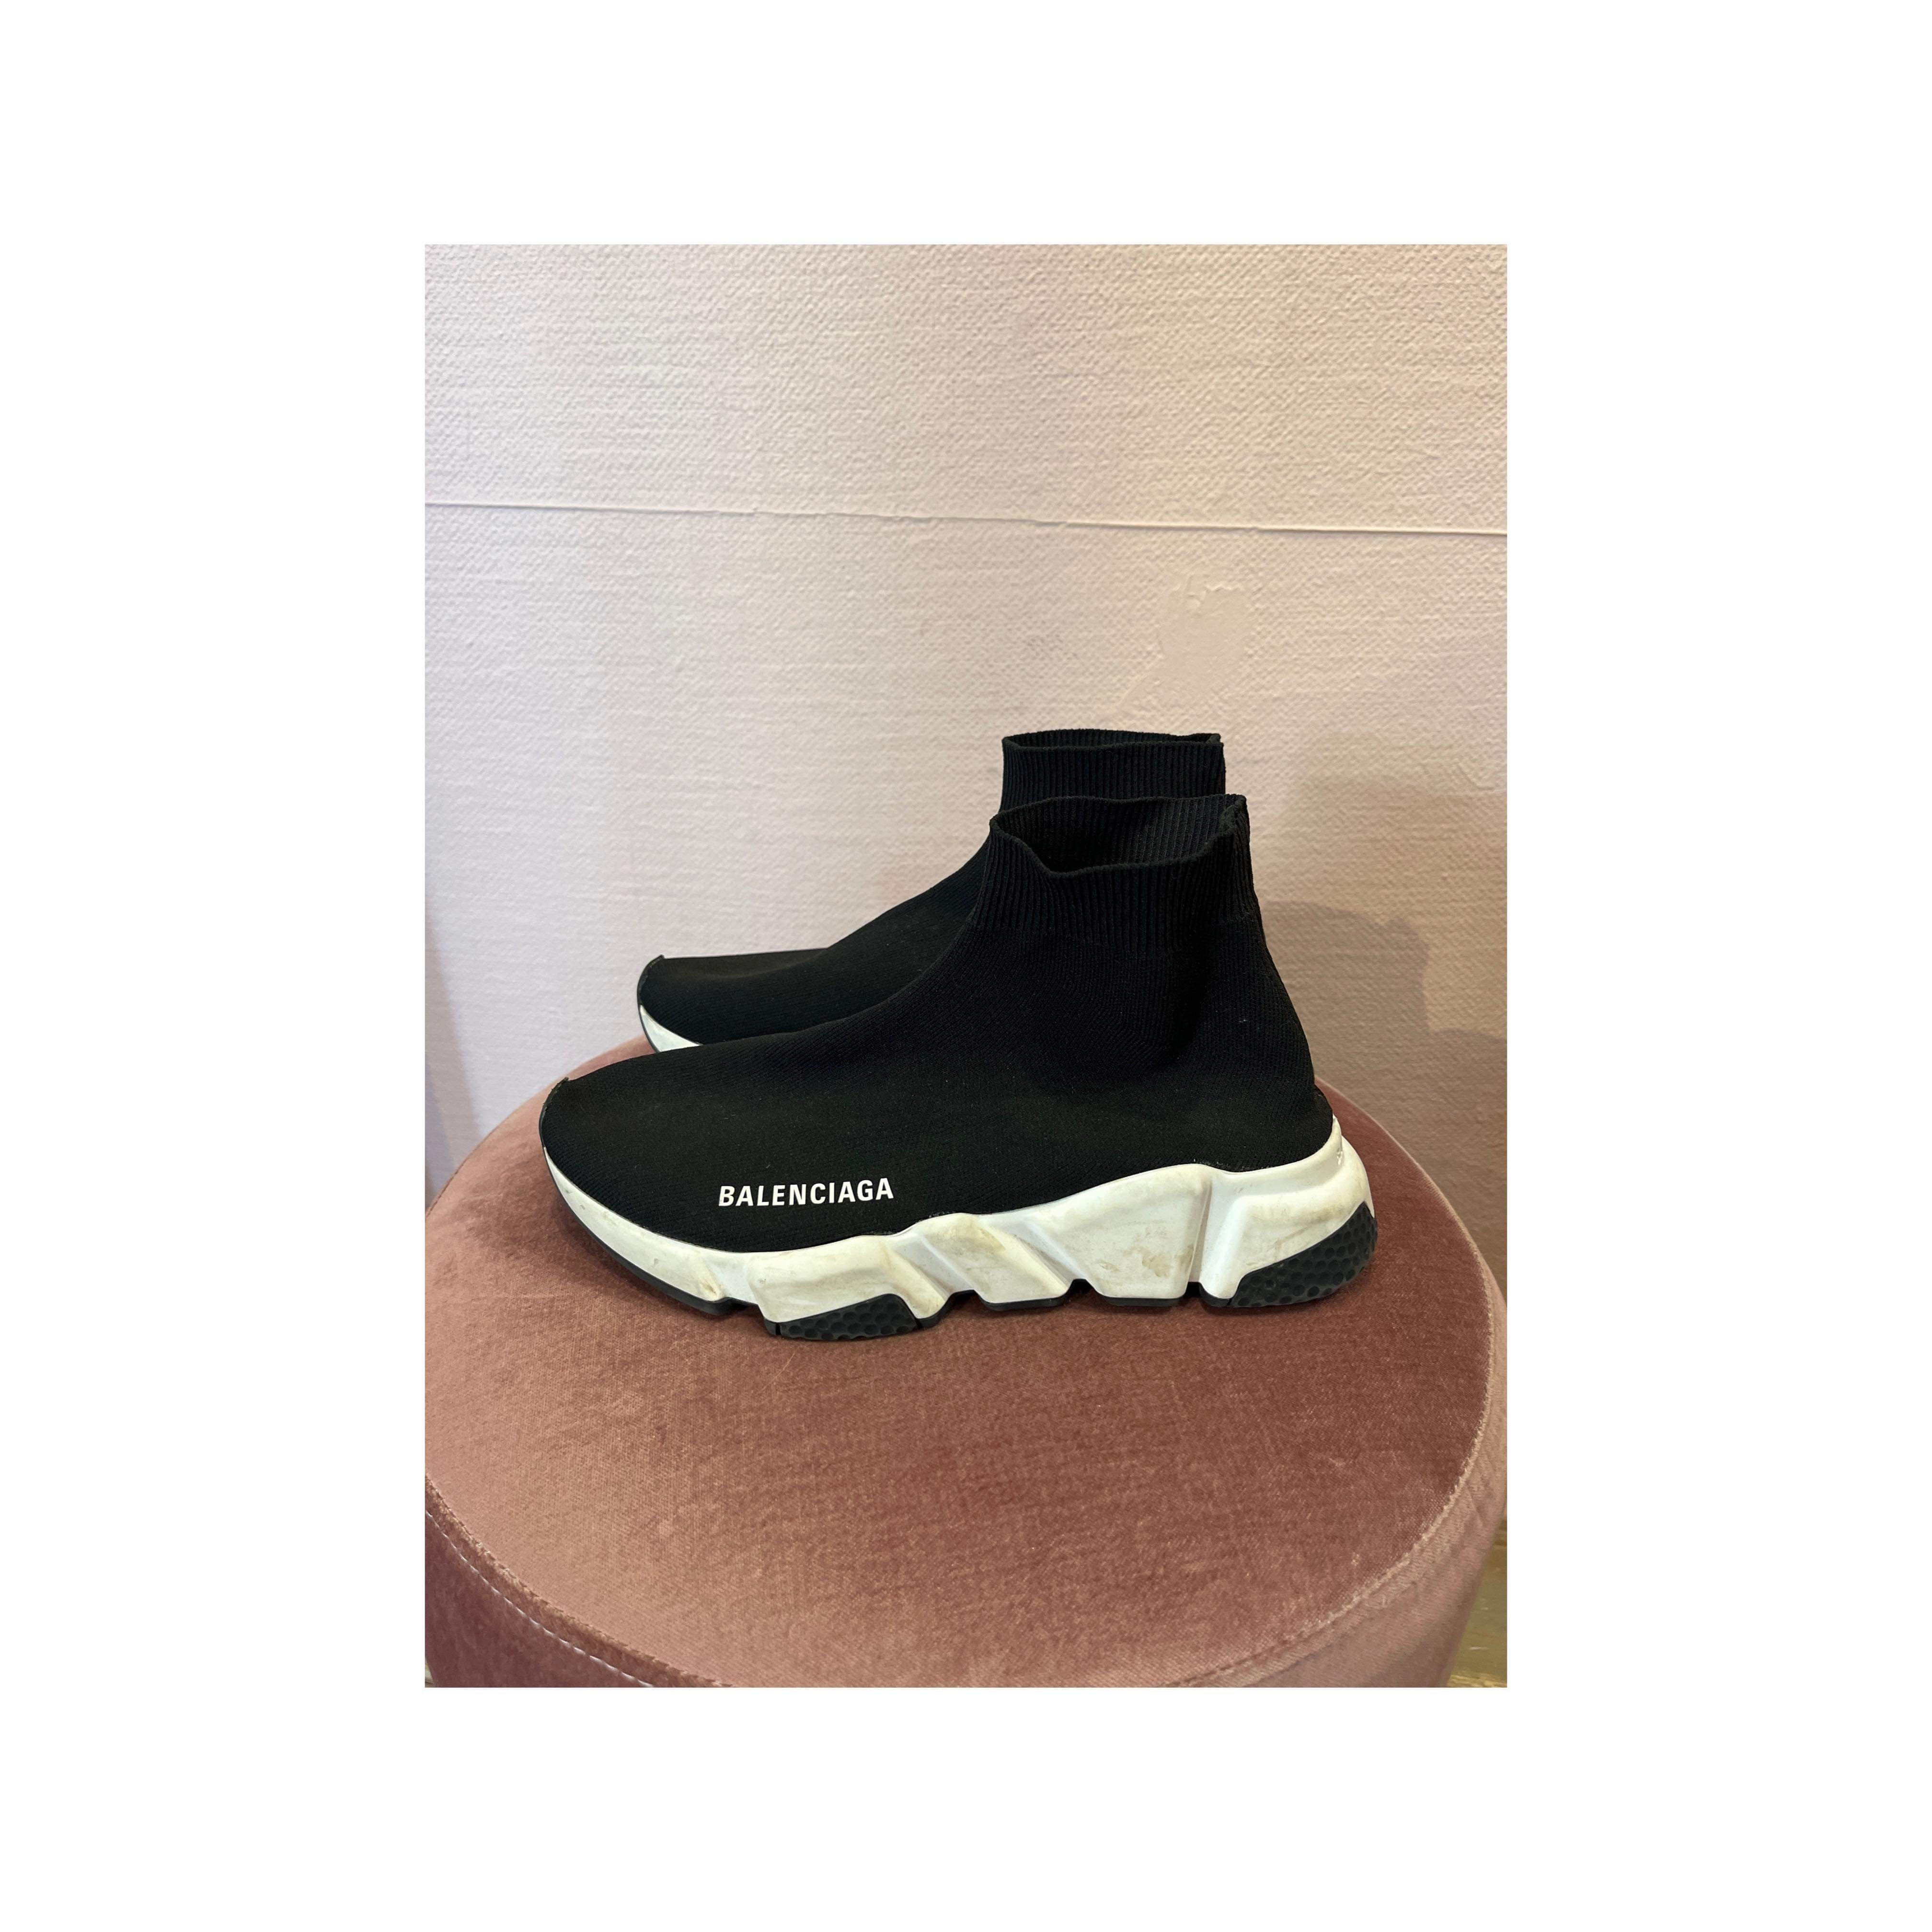 Balenciaga - Sneakers - Size: 37